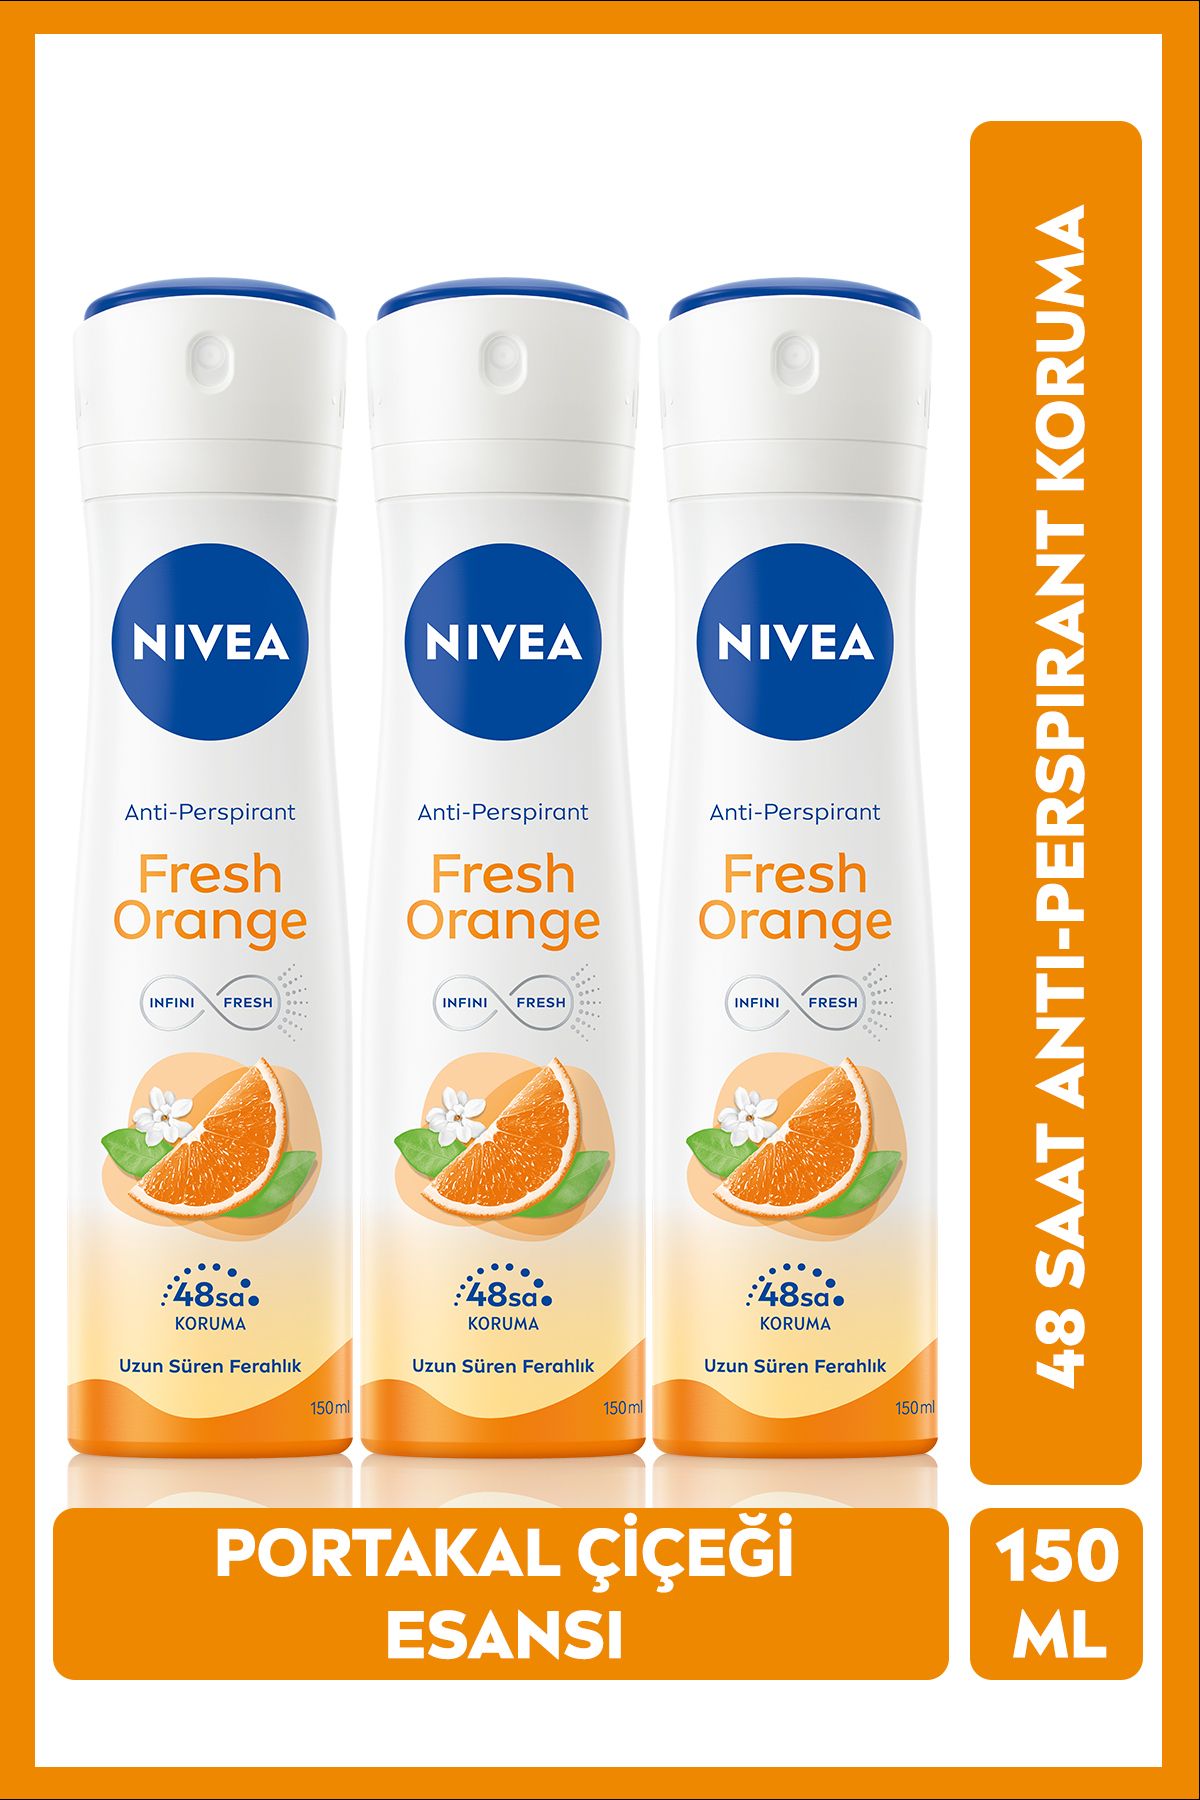 NIVEA Kadın Sprey Deodorant Fresh Orange, 48 Saat Anti-perspirant Koruma, 150 ml X3 Adet